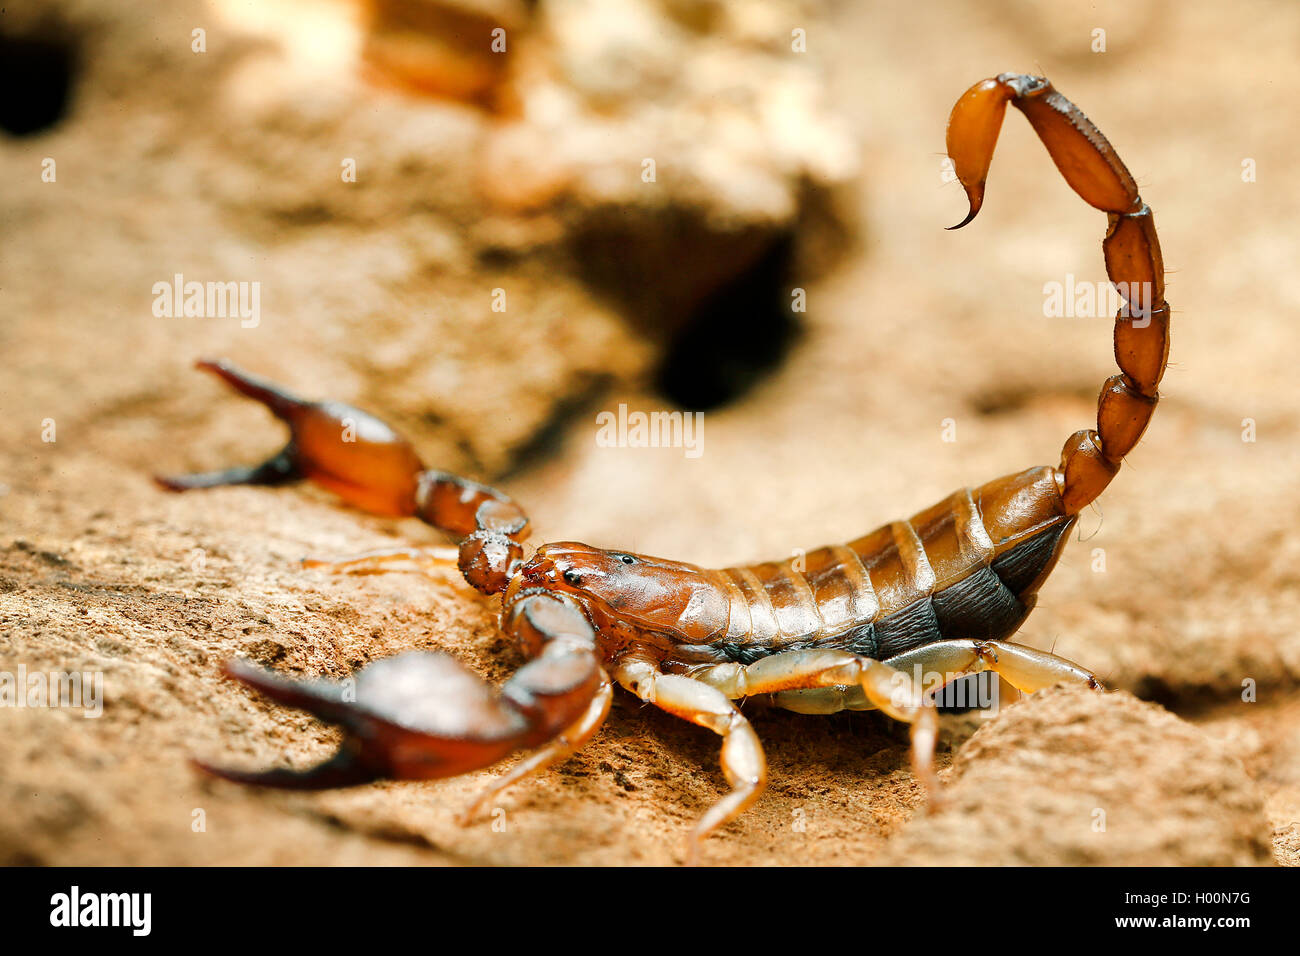 scorpion (Euscorpius tergestinus), on a stone Stock Photo